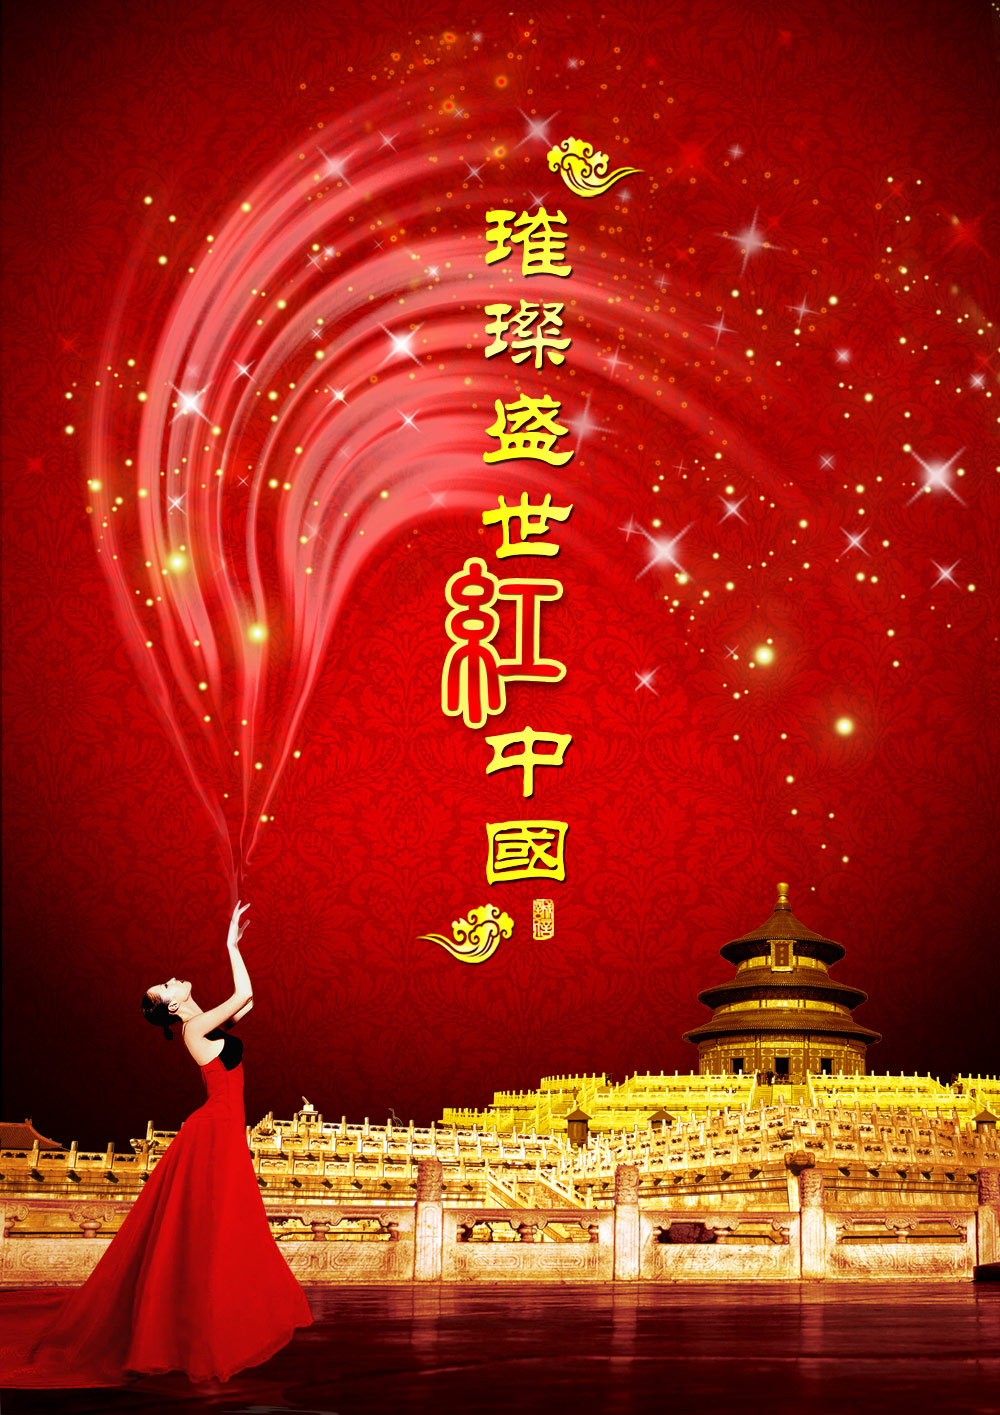 璀璨盛世红中国国庆节素材模板下载(图片ID:510398)_-国庆节-节日素材  image